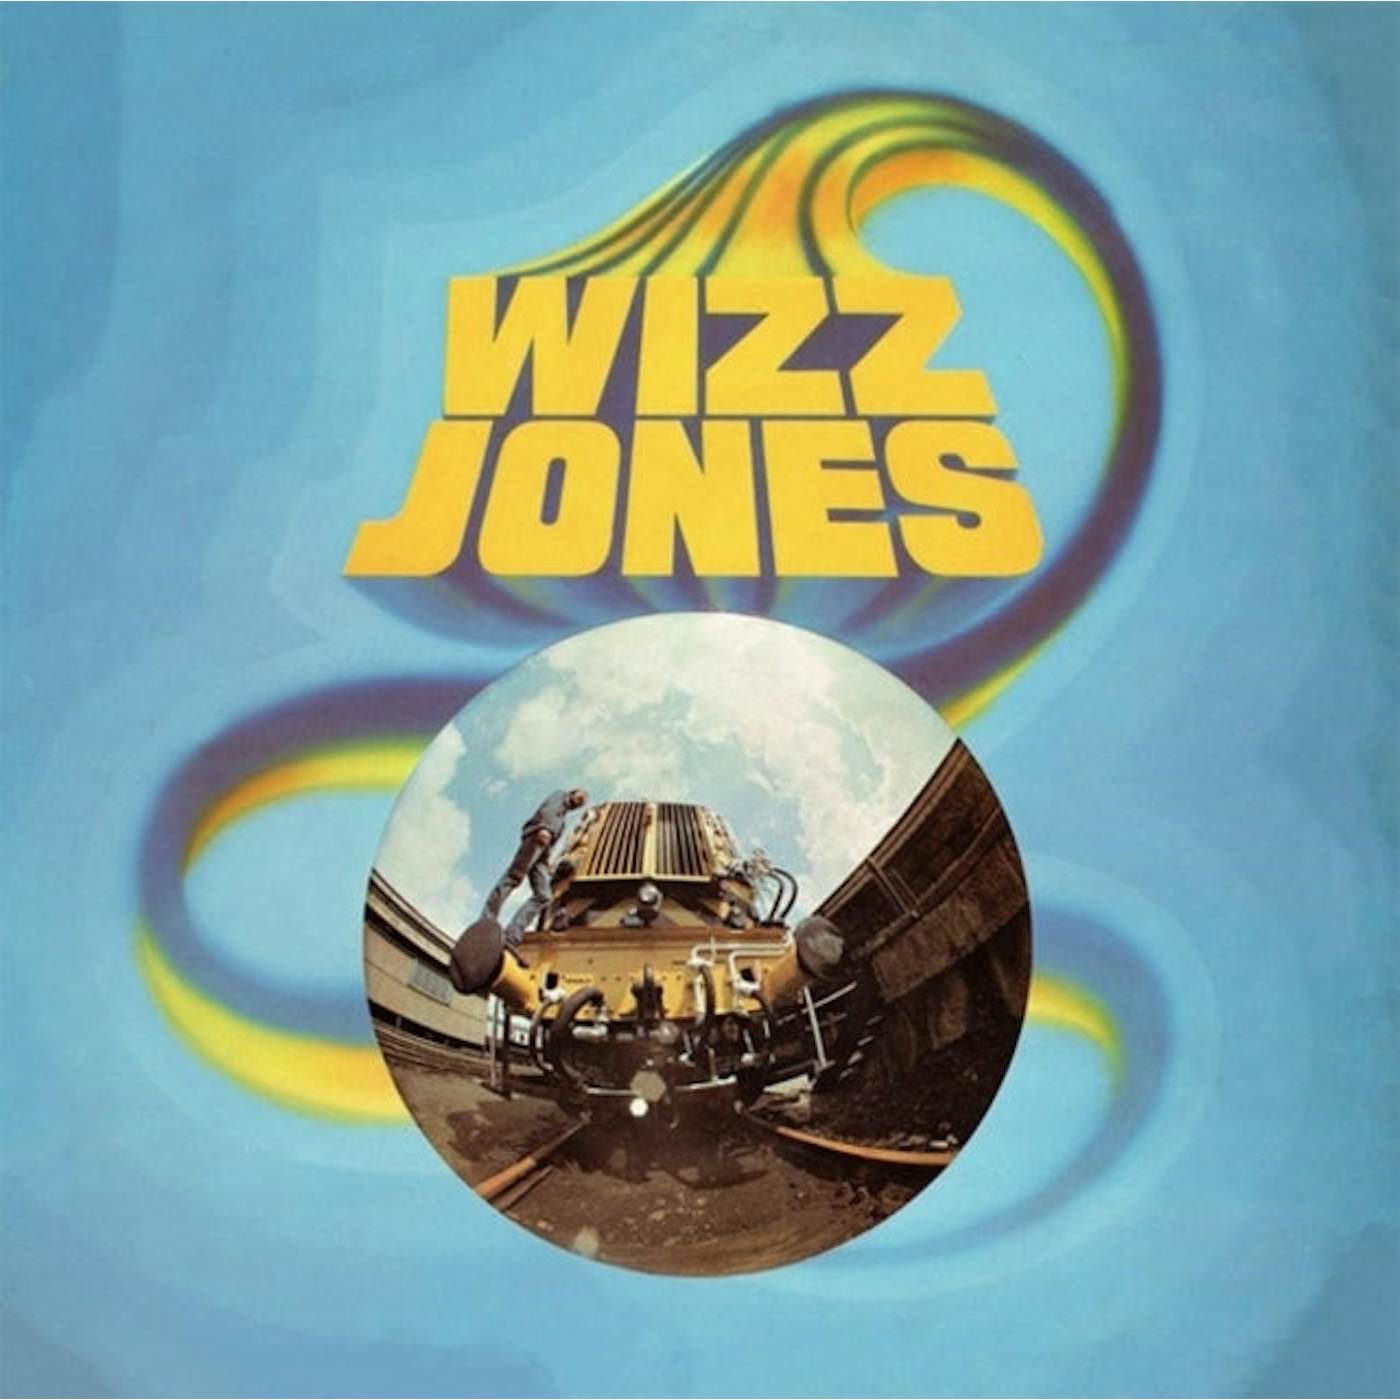 Wizz Jones LP - Wizz Jones (Vinyl)